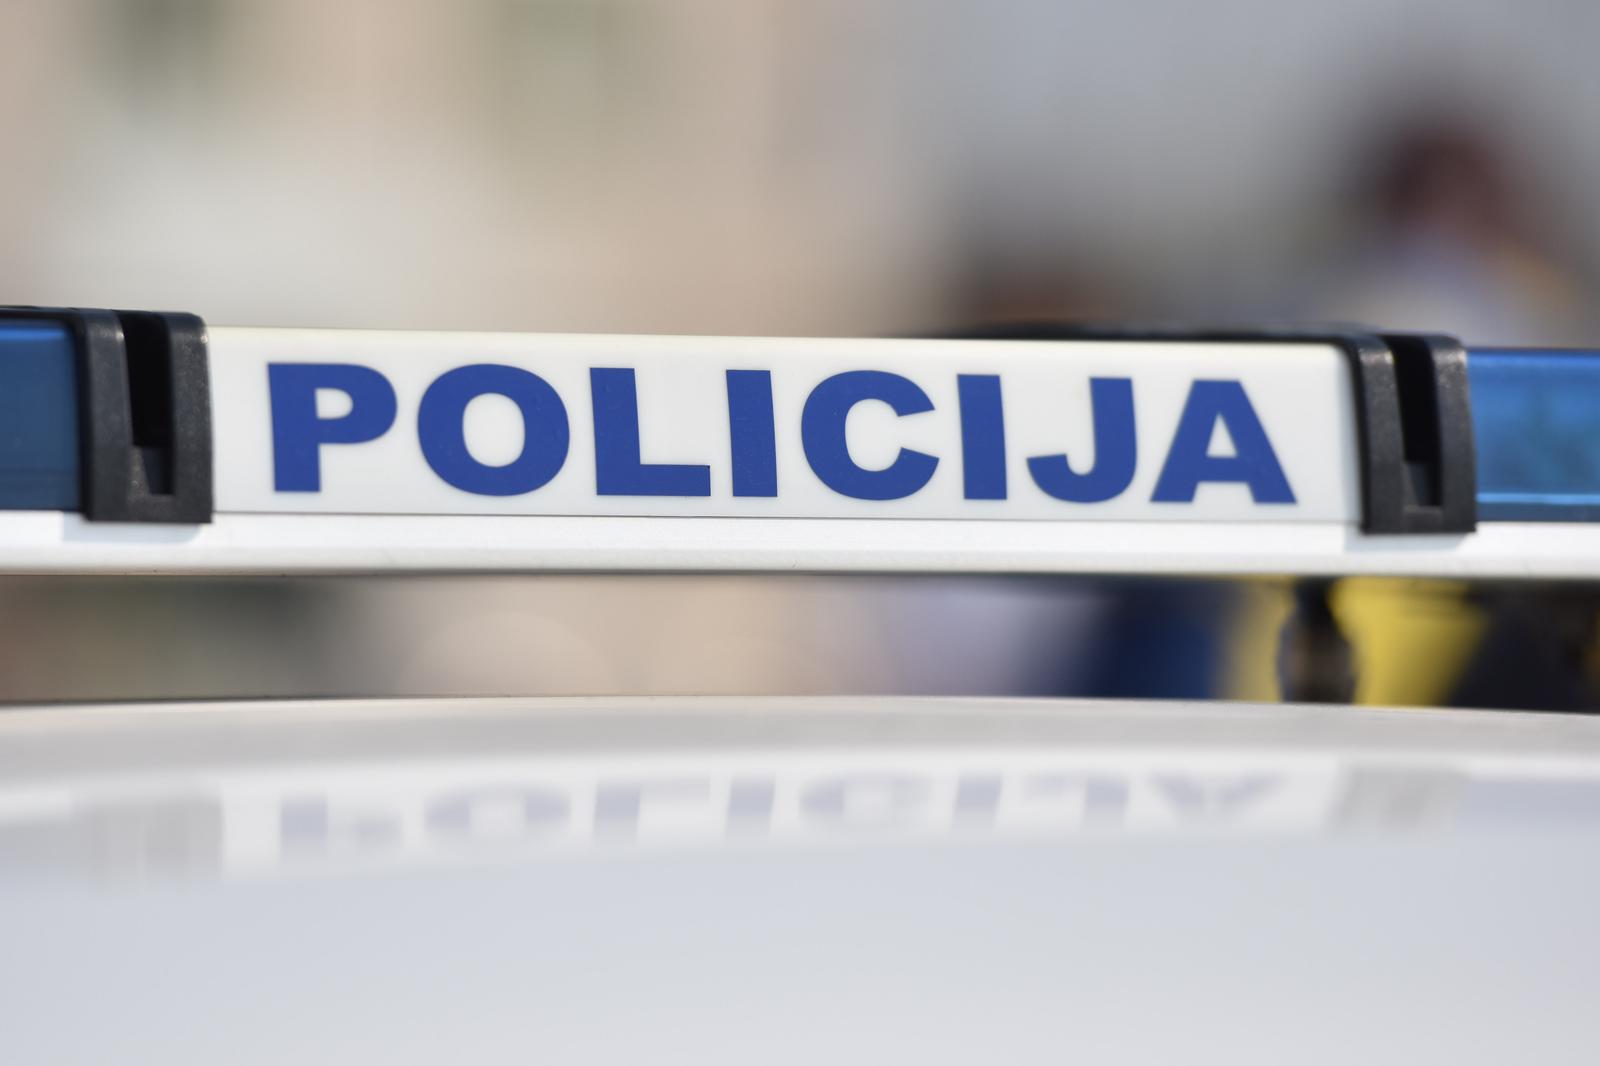 Vozila policije i vatrogasaca 14.10.2018., Vodice - Policija i vatrogascirrPhoto: Hrvoje Jelavic/PIXSELL